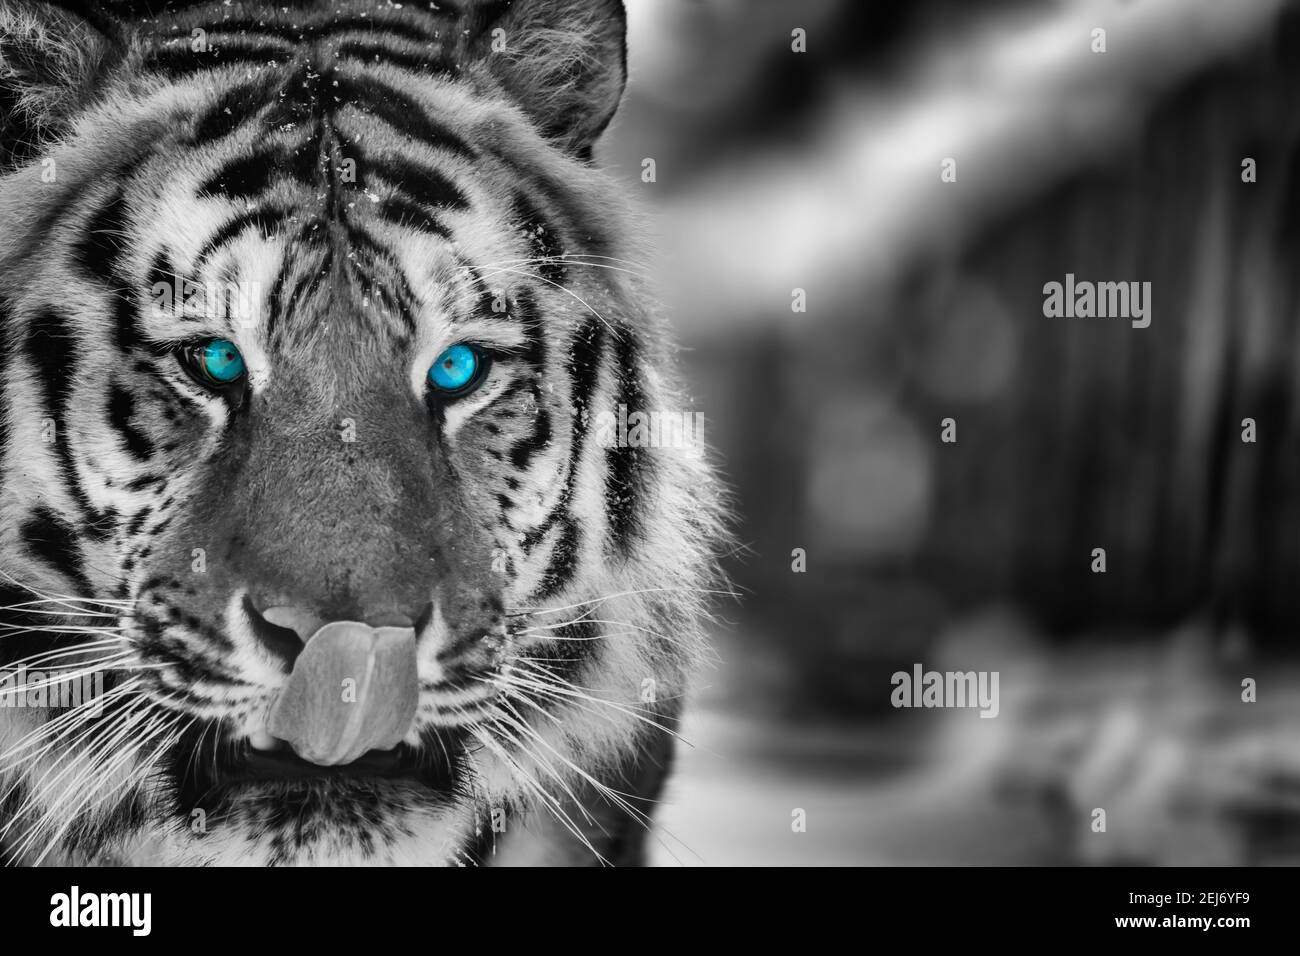 Bella wild tigre siberiana ritratto sulla neve con occhio azzurro Foto Stock